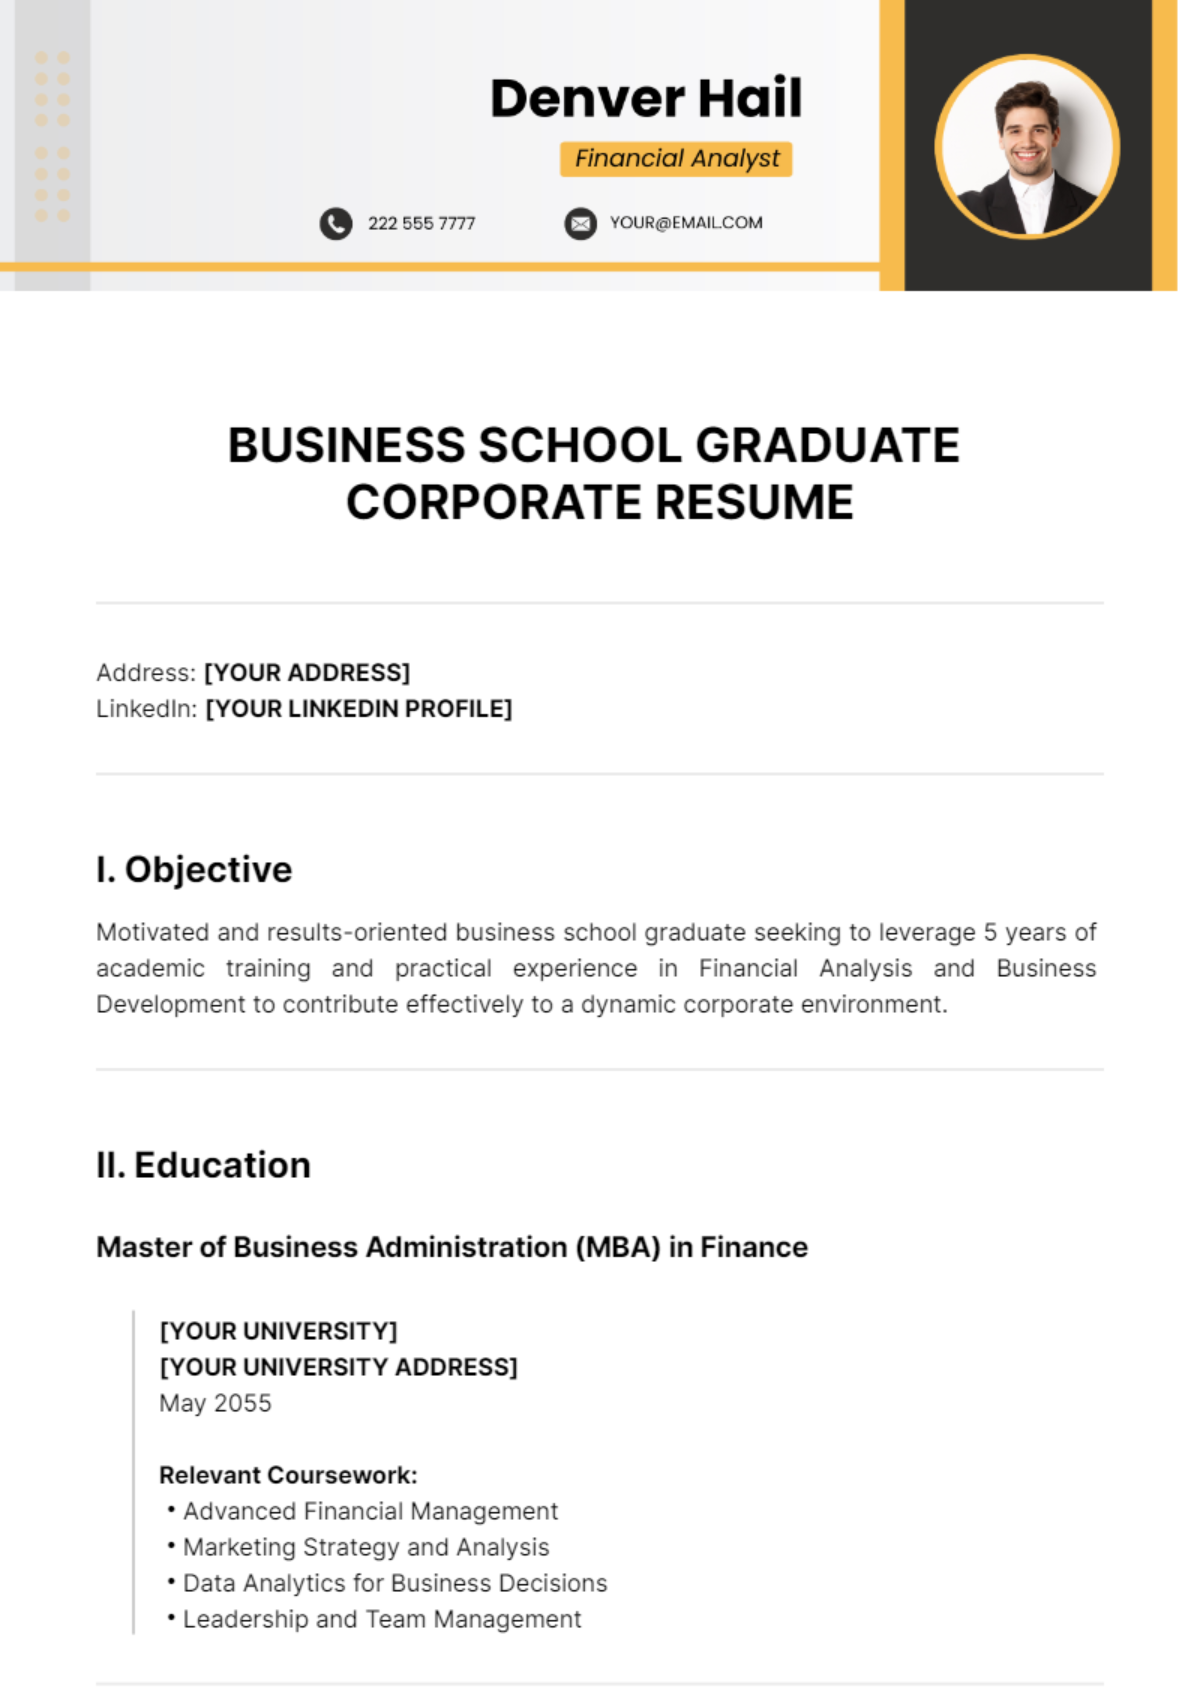 Business School Graduate Corporate Resume Template